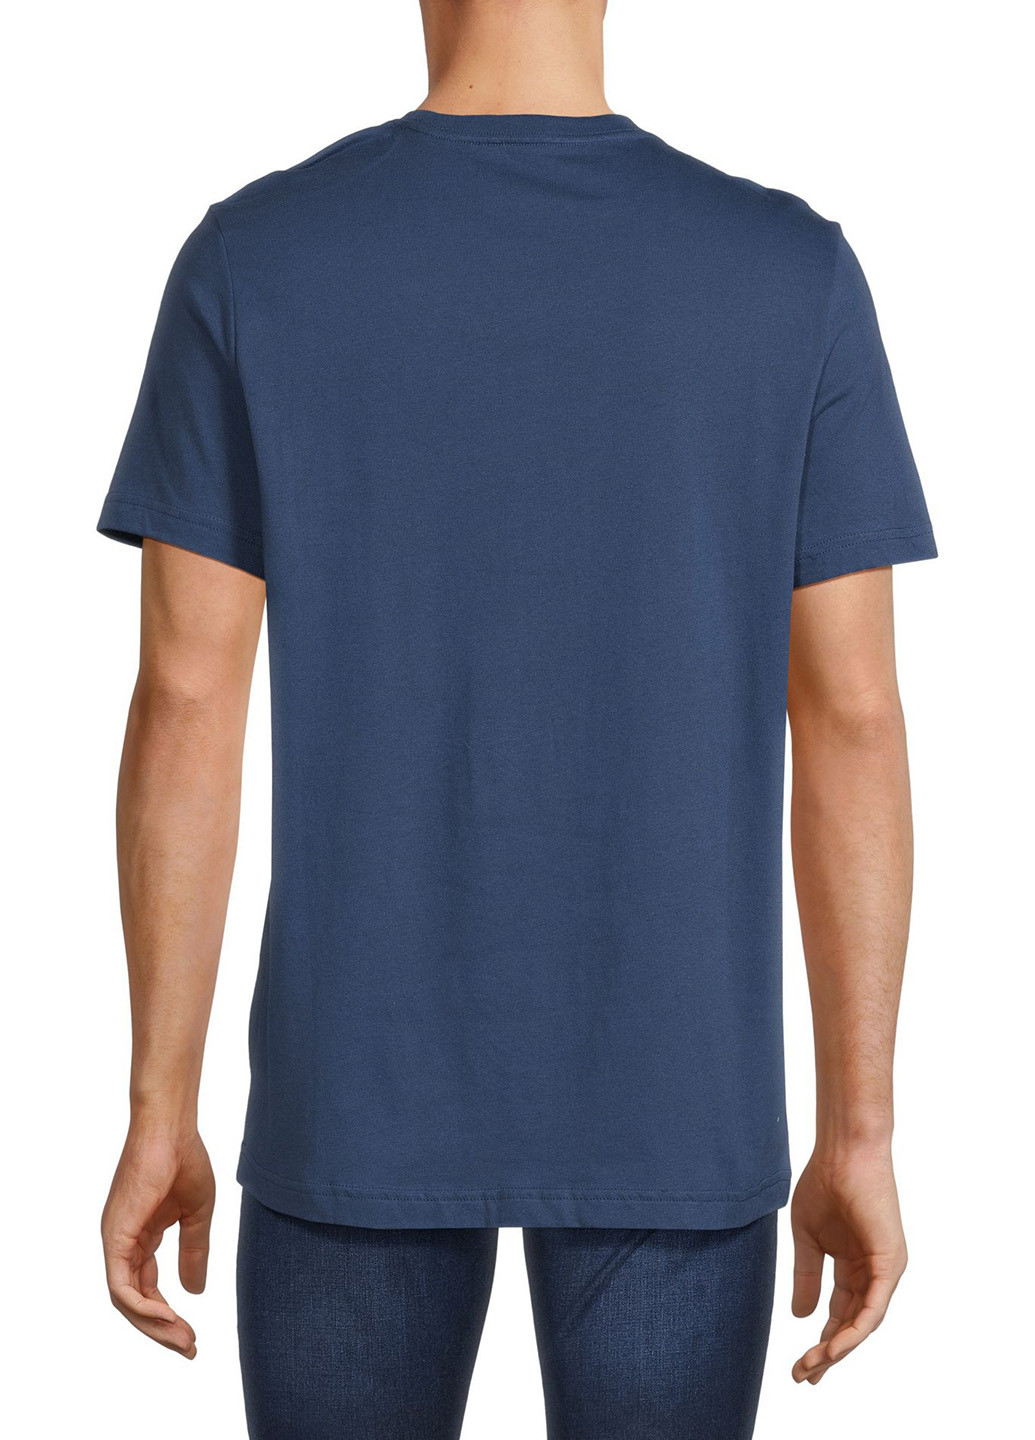 Синяя футболка Tommy Hilfiger